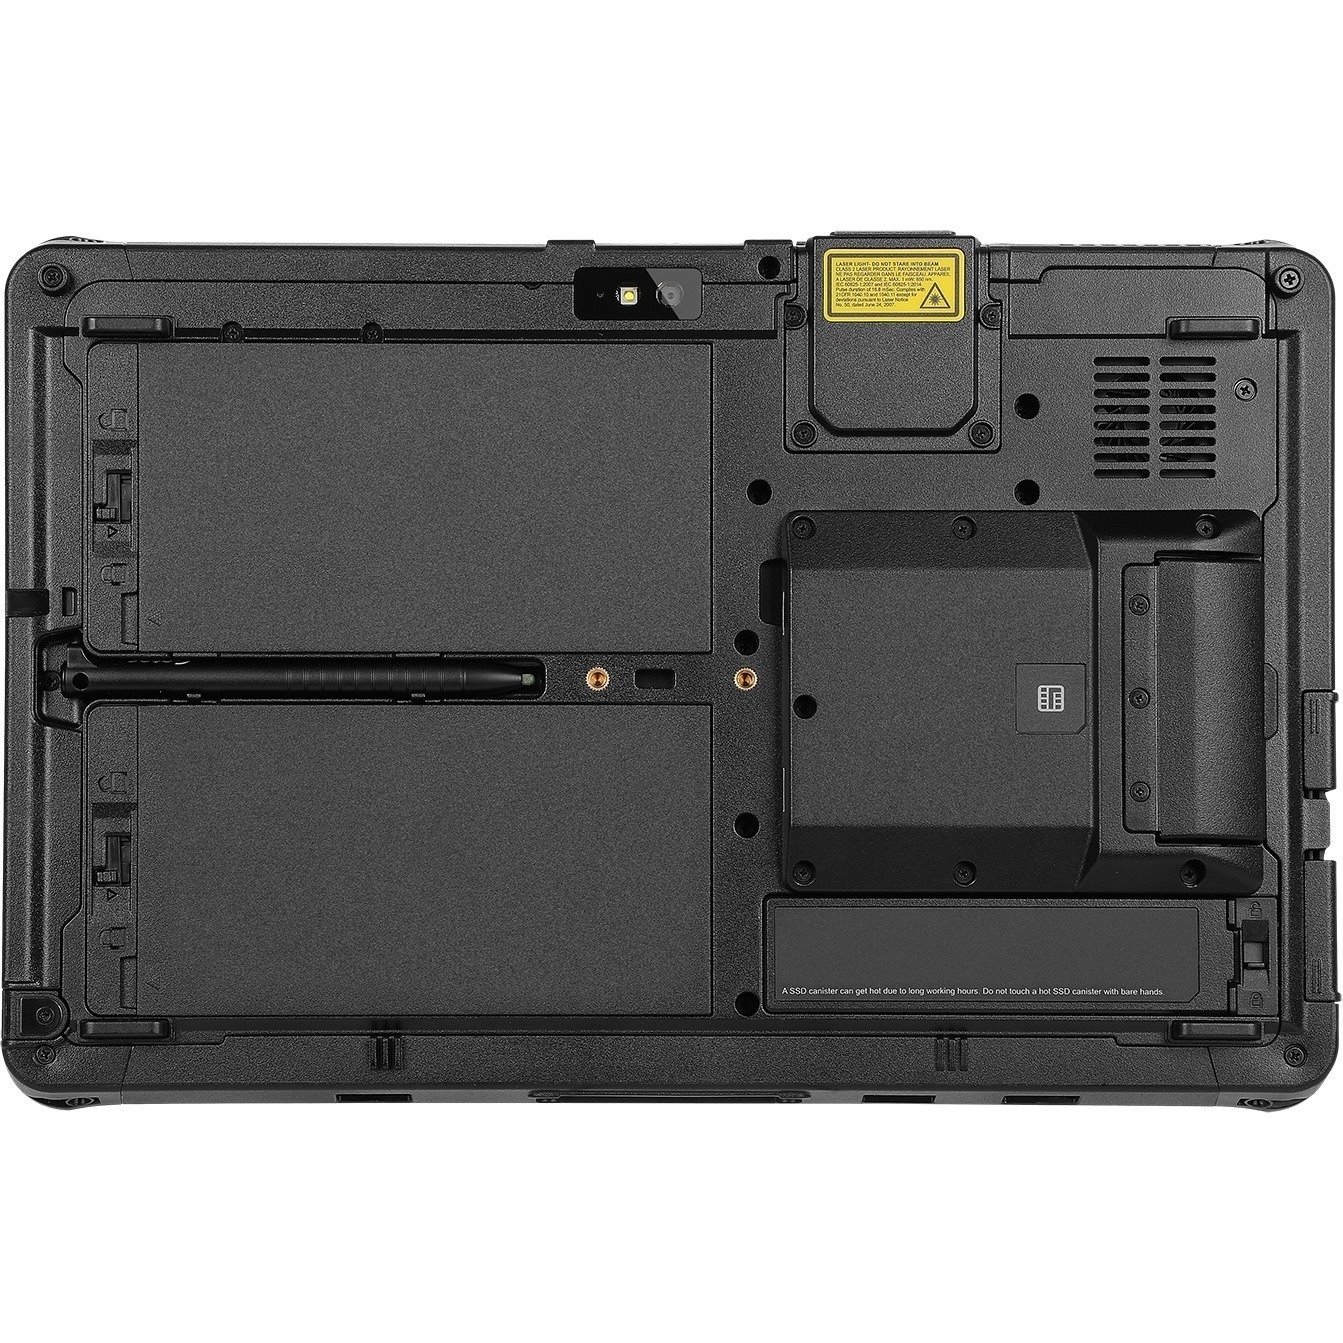 Getac F110 Rugged Tablet - 11.6" Full HD - 16 GB - 512 GB SSD - Windows 11 Pro 64-bit - 4G